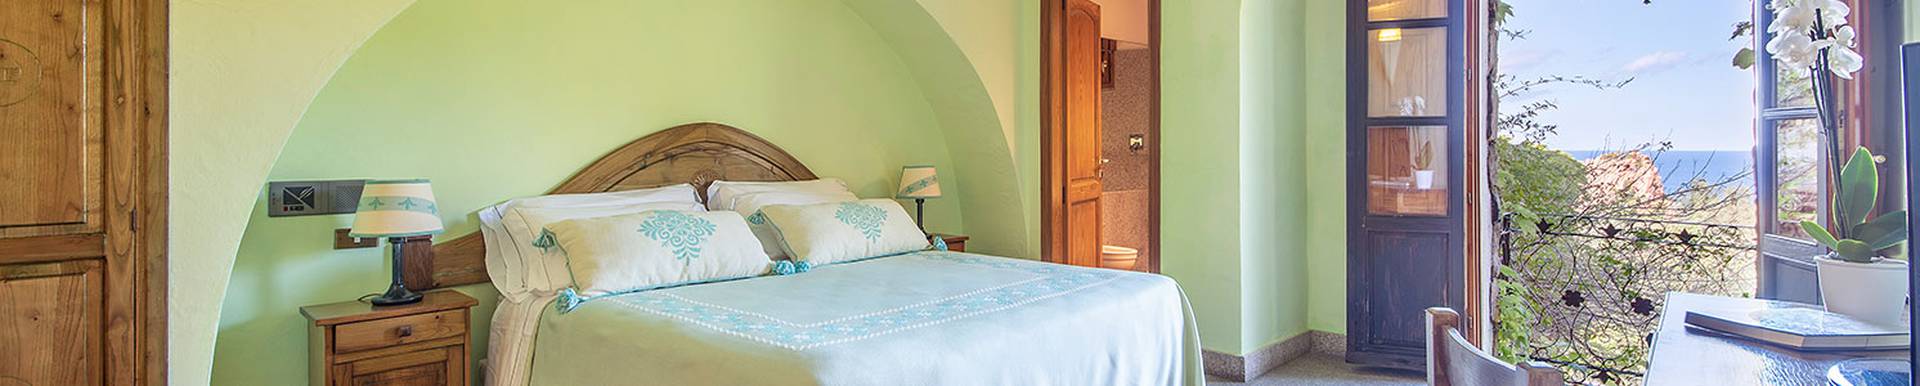 Blau hotels - Arbatax - Sardinia - 